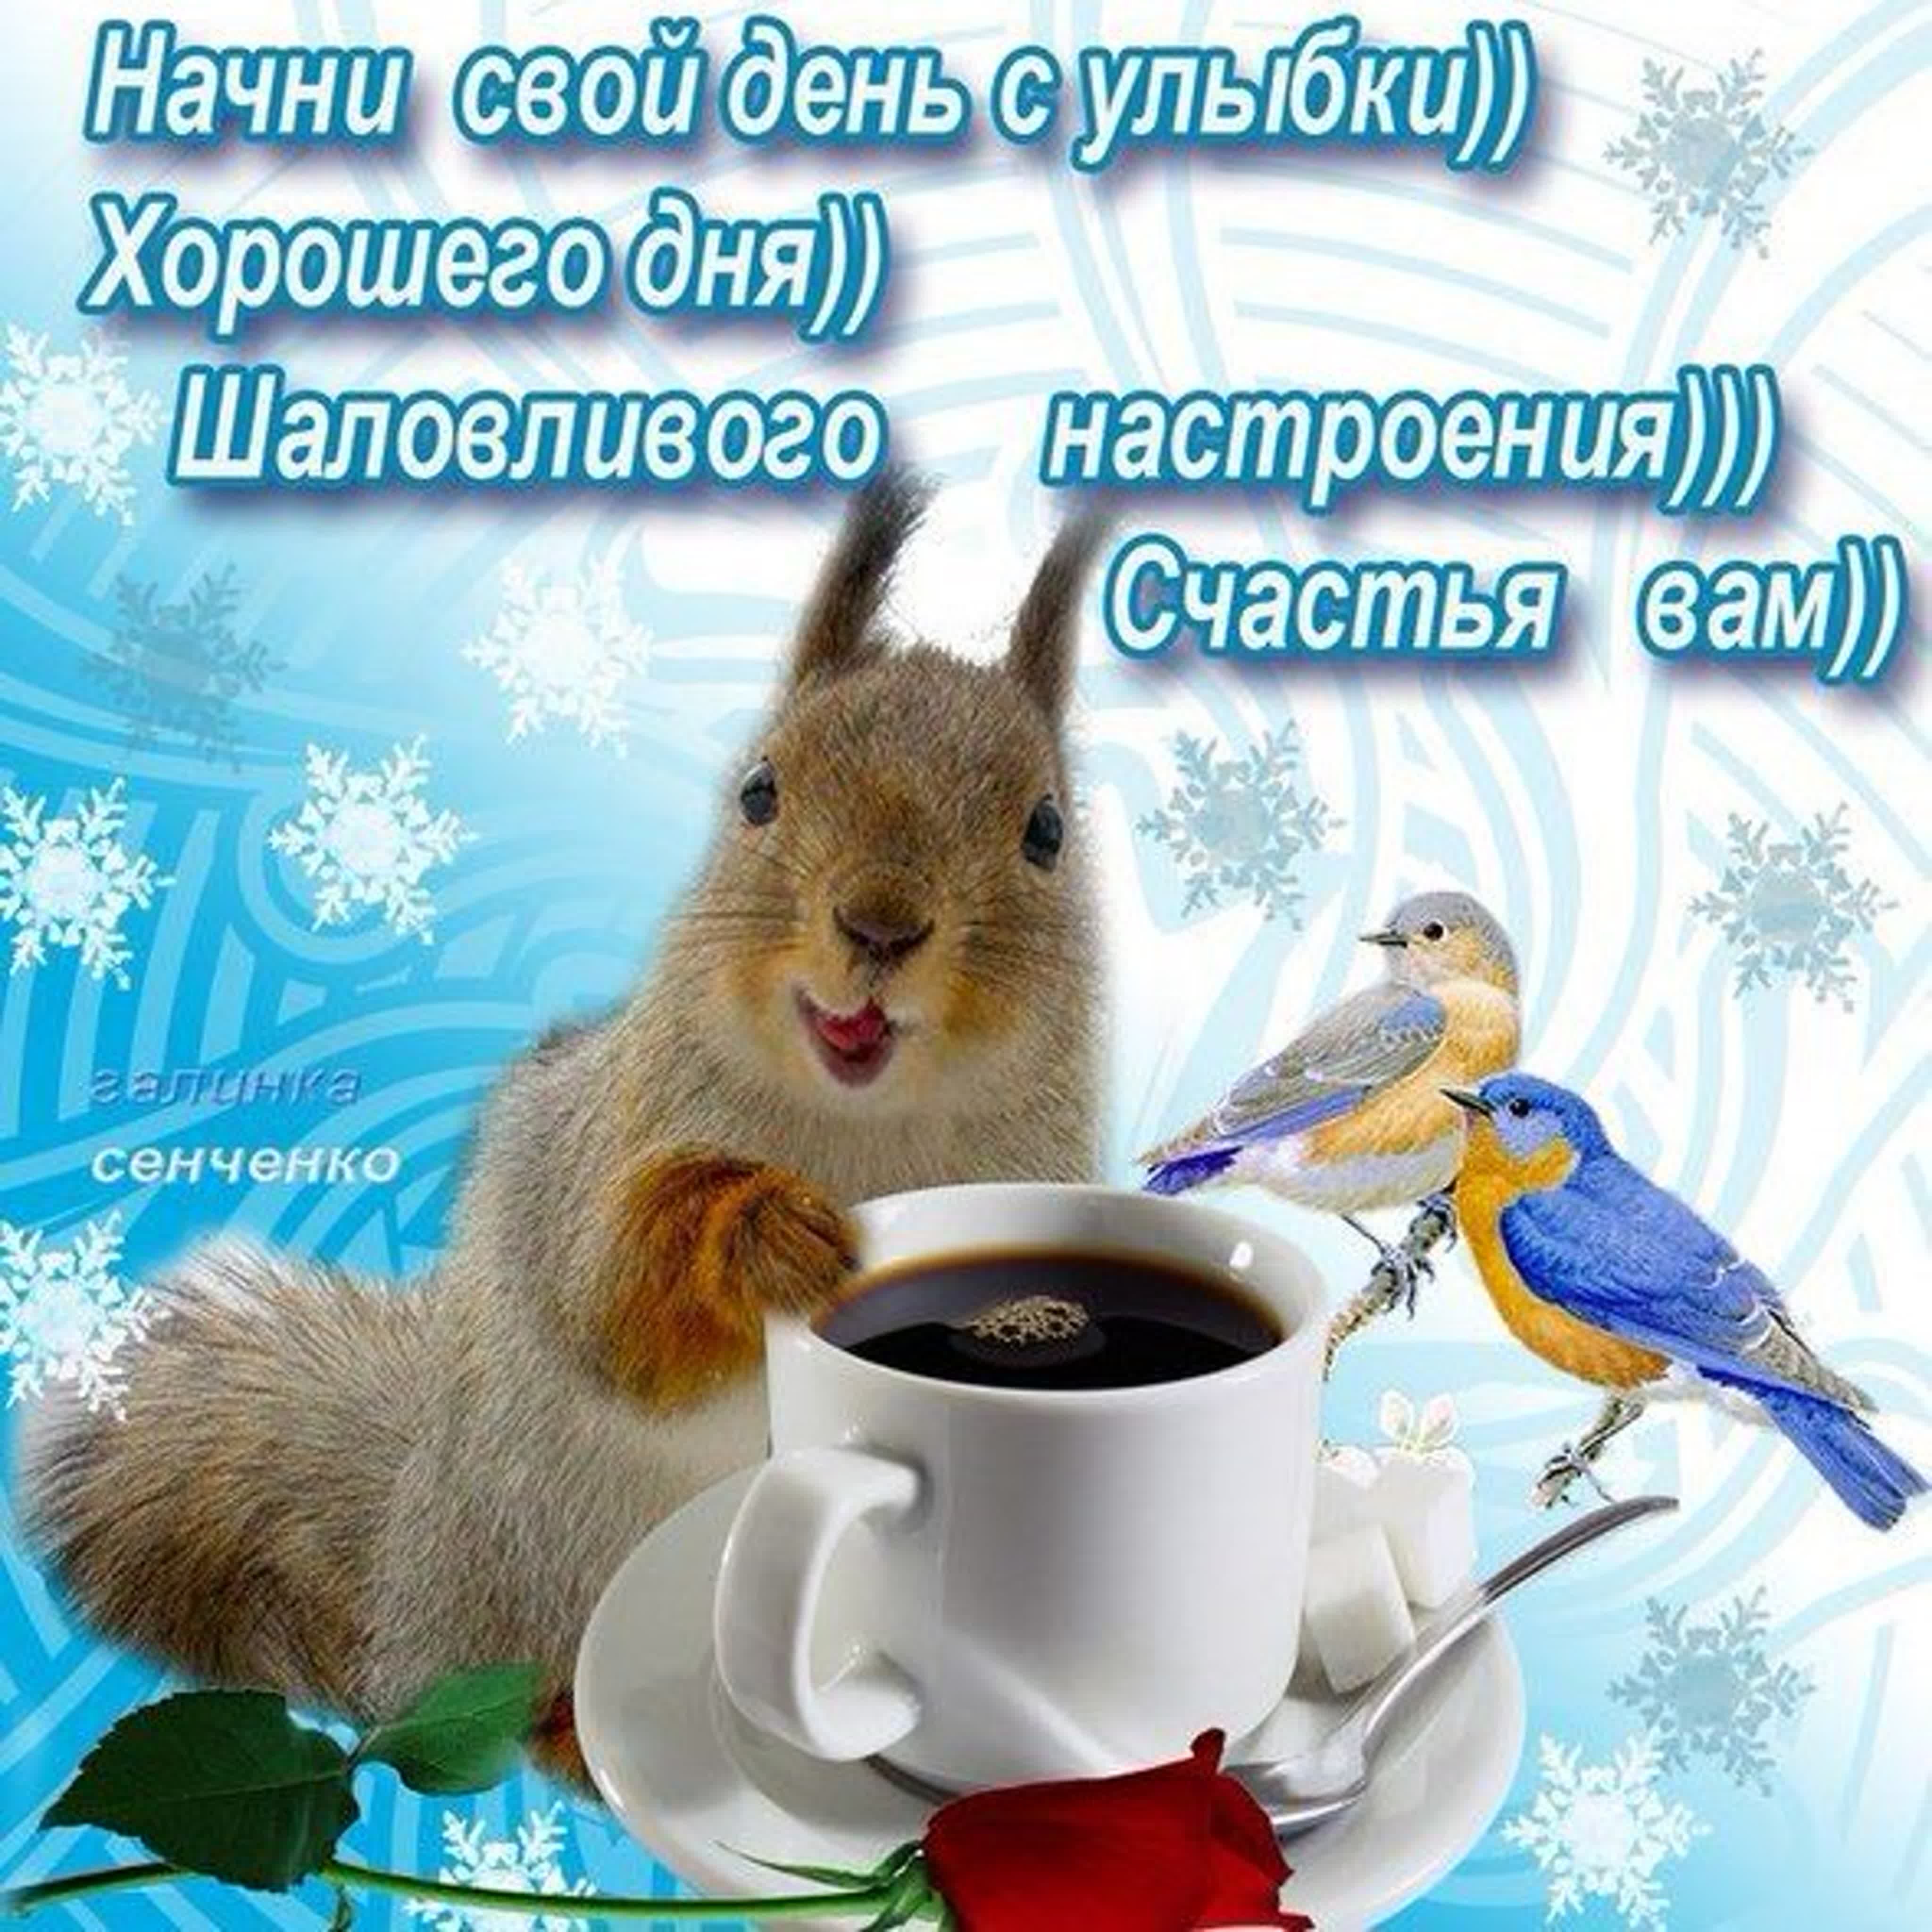 Зимнее утро весело. Зимние поздравления с добрым утром. Зимние открытки поздравления с добрым утром. Пожелания доброго зимнего утра. Доброго зимнего утра и хорошего дня.